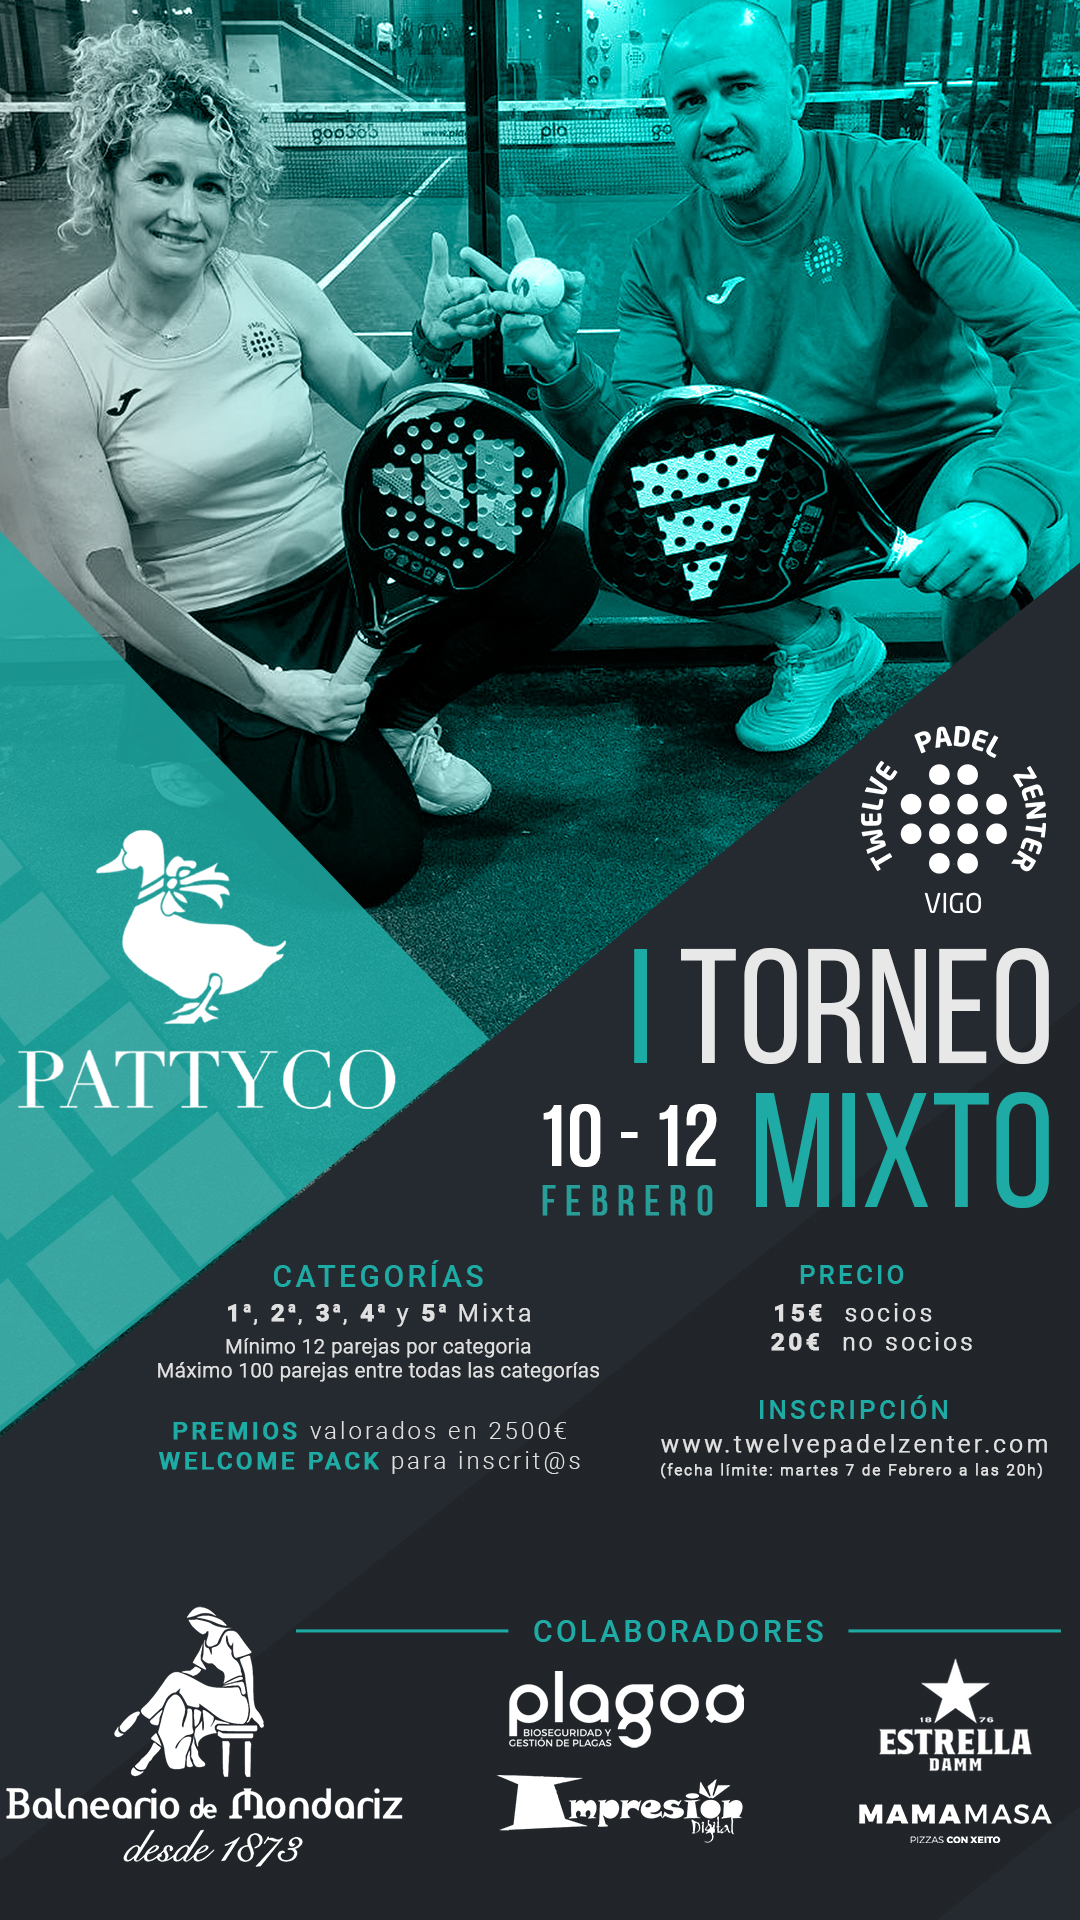 I TORNEO MIXTO 10-12 FEBRERO by PATTYCO